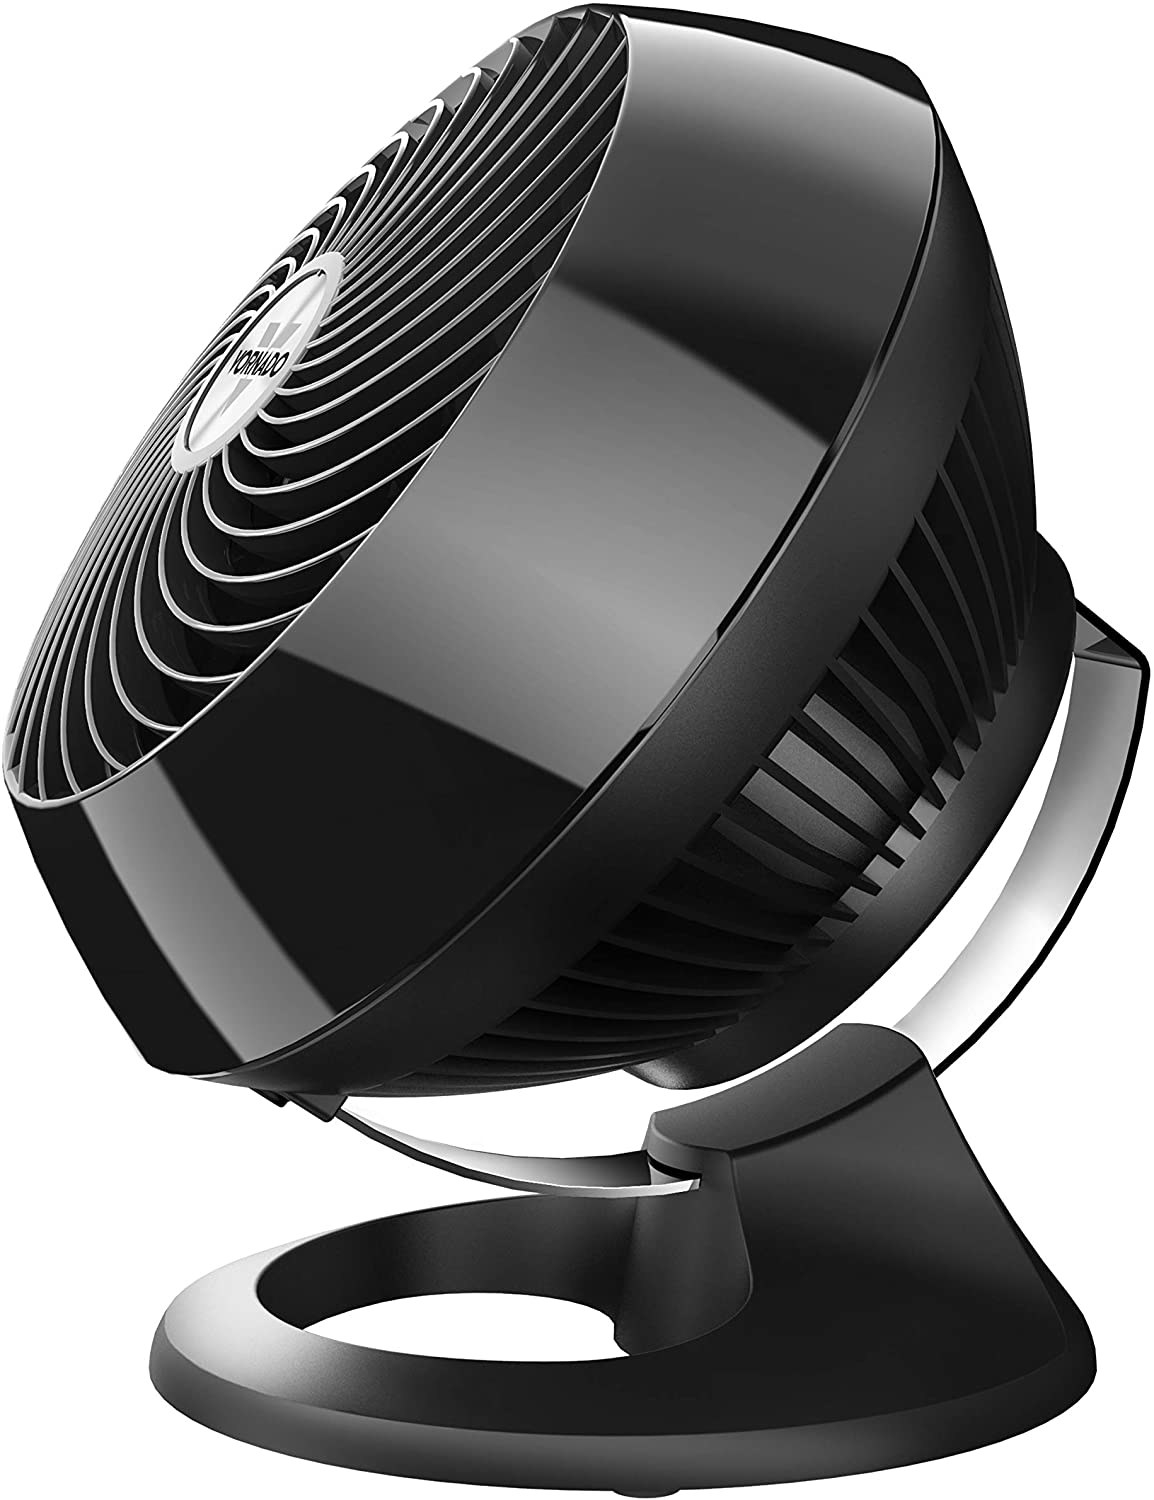 The fan in black